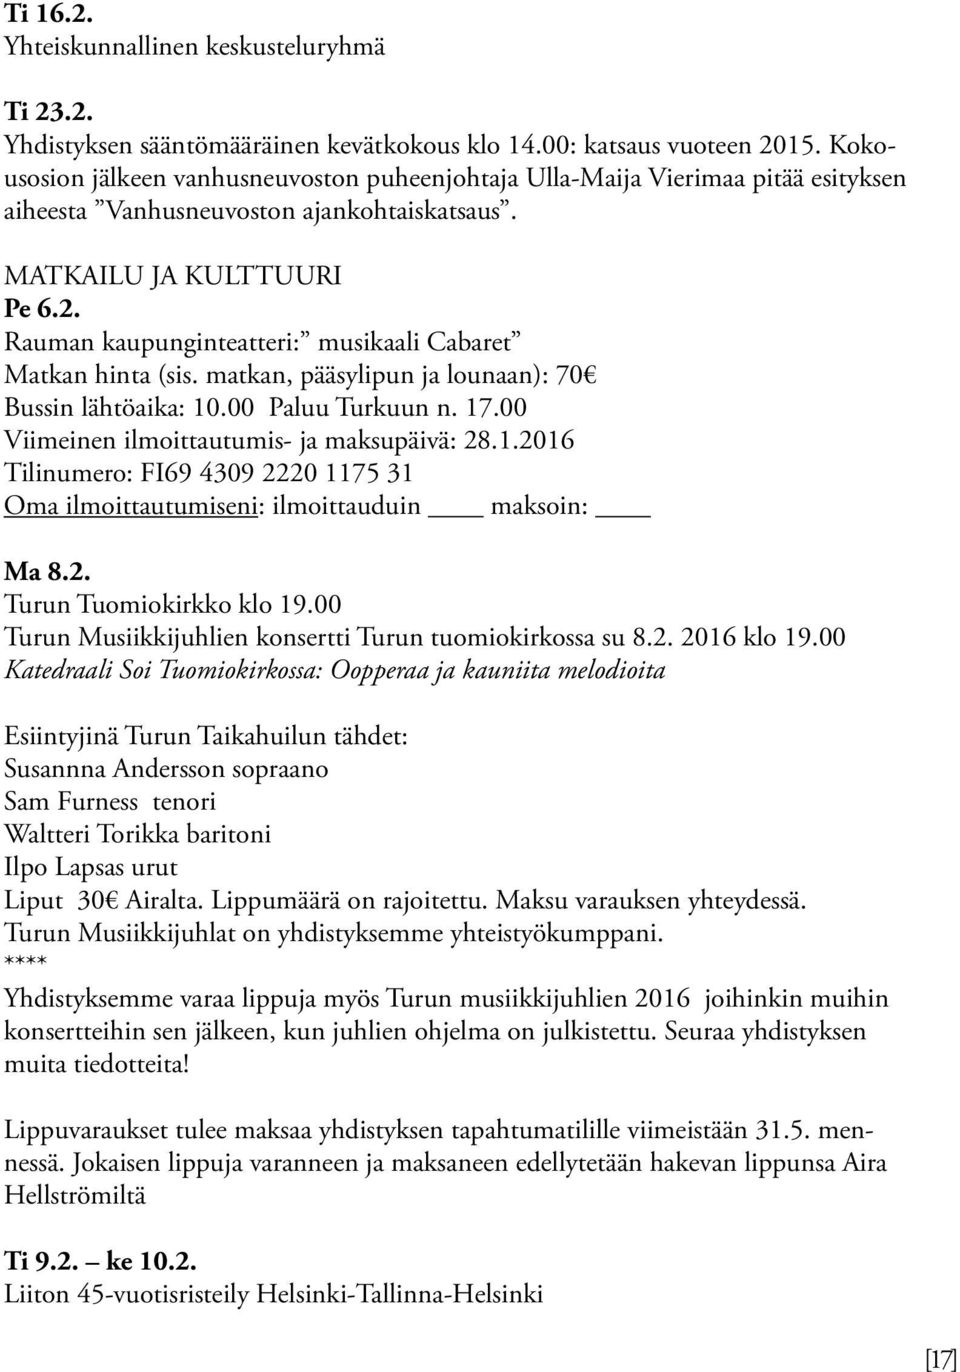 Rauman kaupunginteatteri: musikaali Cabaret Matkan hinta (sis. matkan, pääsylipun ja lounaan): 70 Bussin lähtöaika: 10